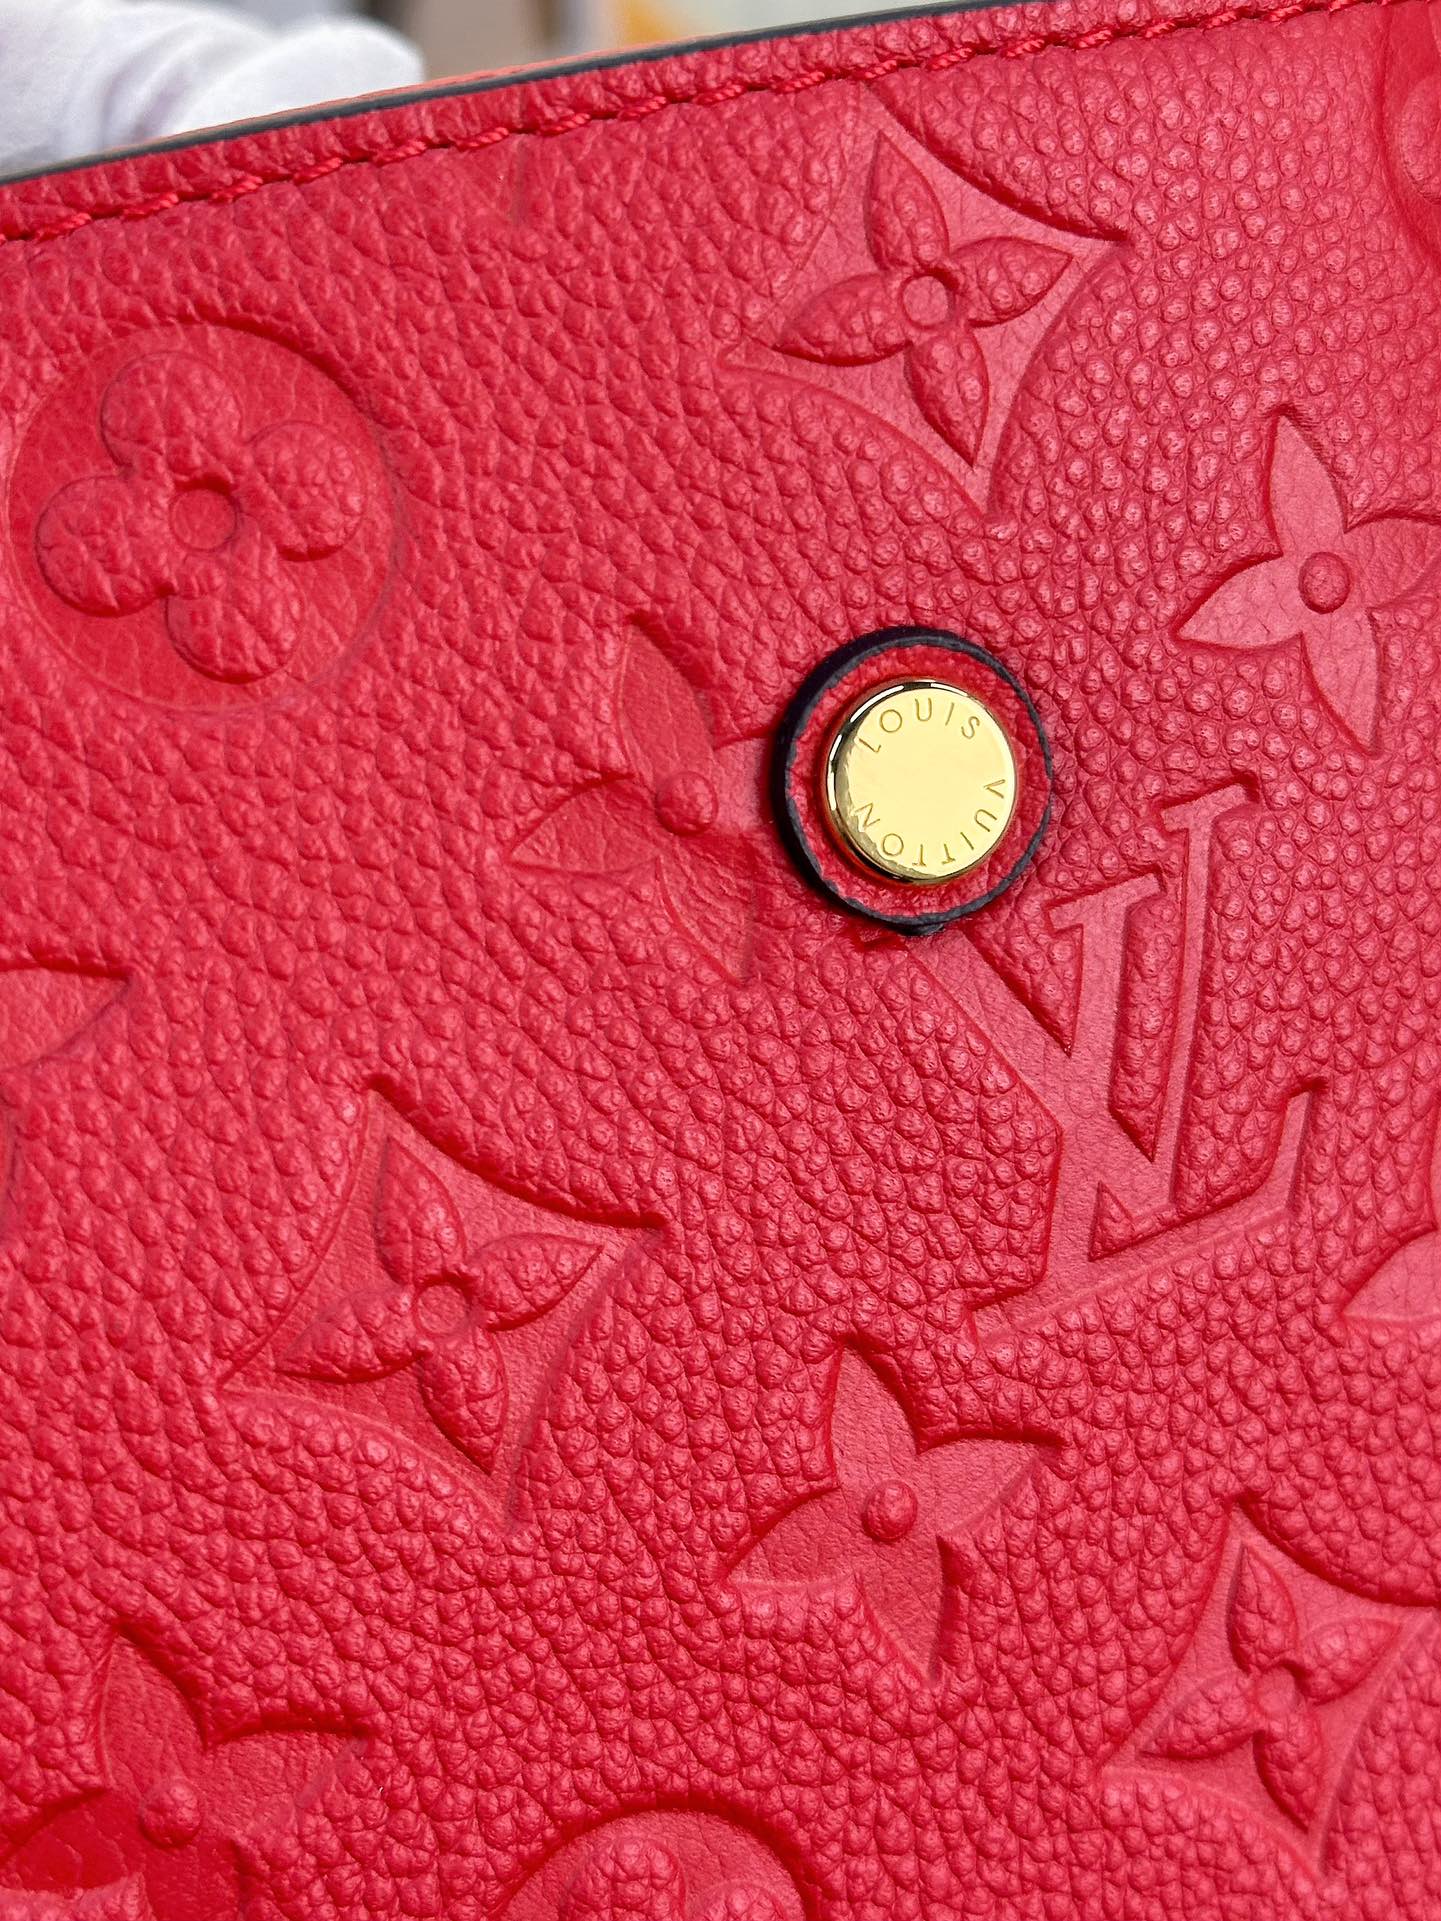 顶级原单M41048红色MONTAIGNE中号手袋是活力四射的商务女士的理想之选富有立体感的造型与精巧的